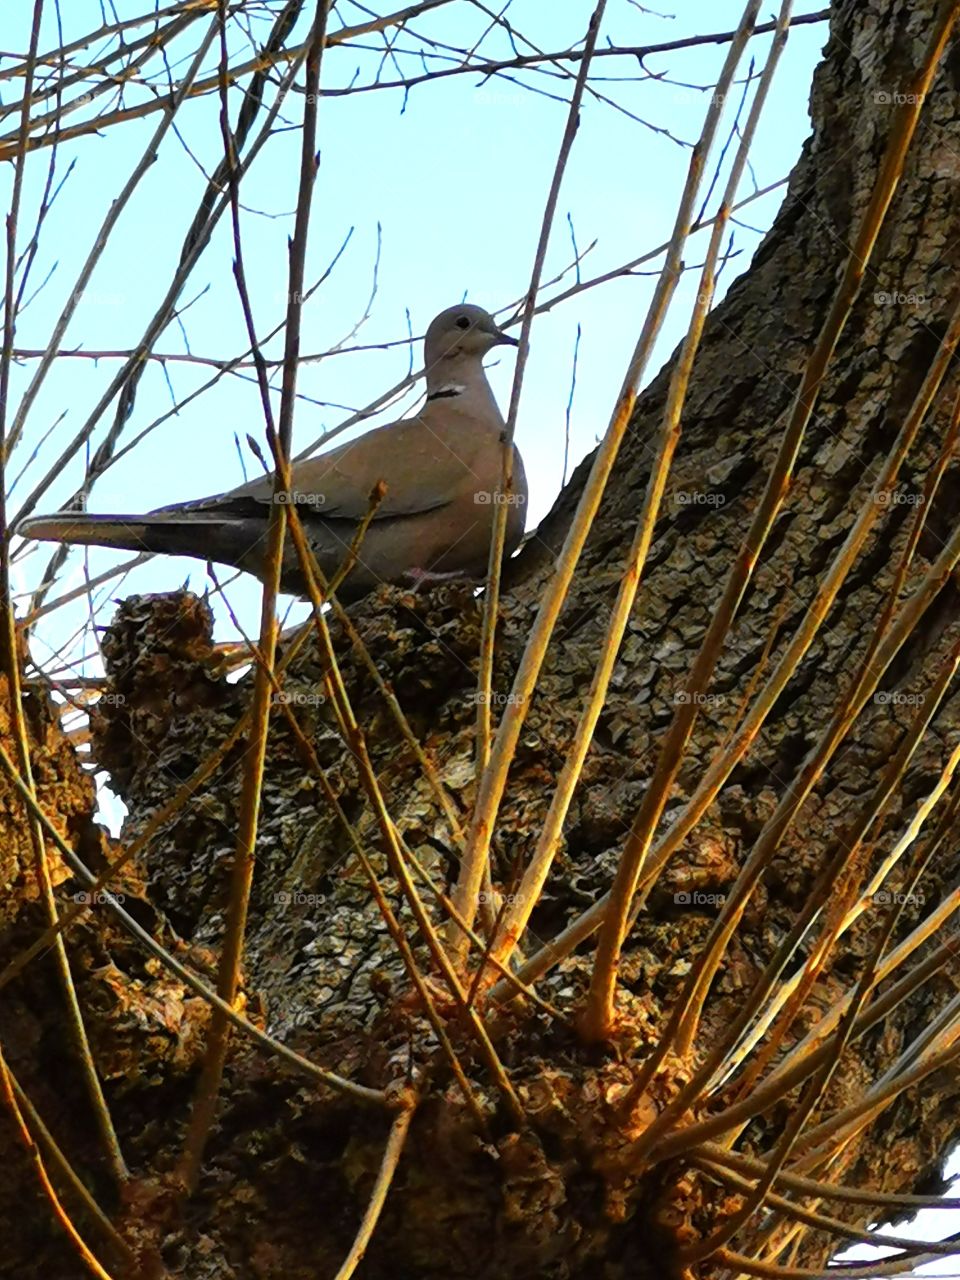 Gran paloma descansando en su árbol favorito